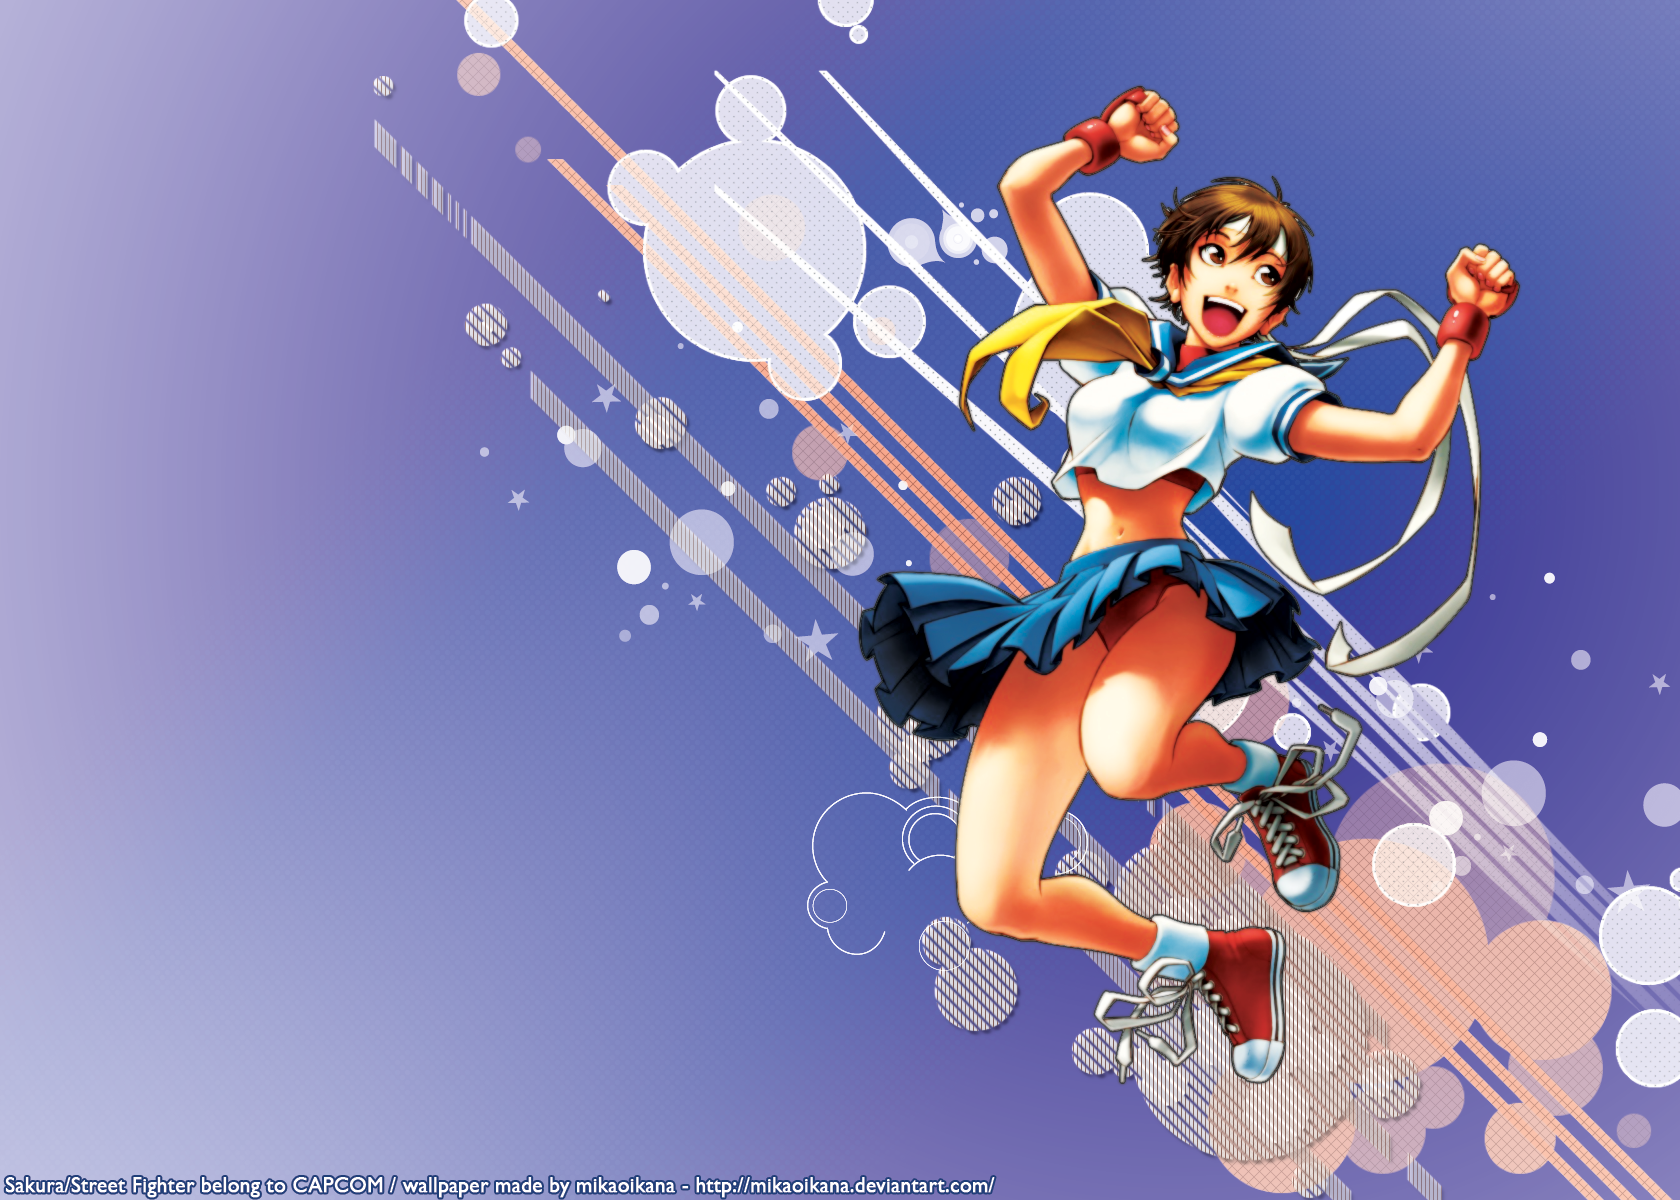 Sakura - Street Fighter by mikaoikana on DeviantArt